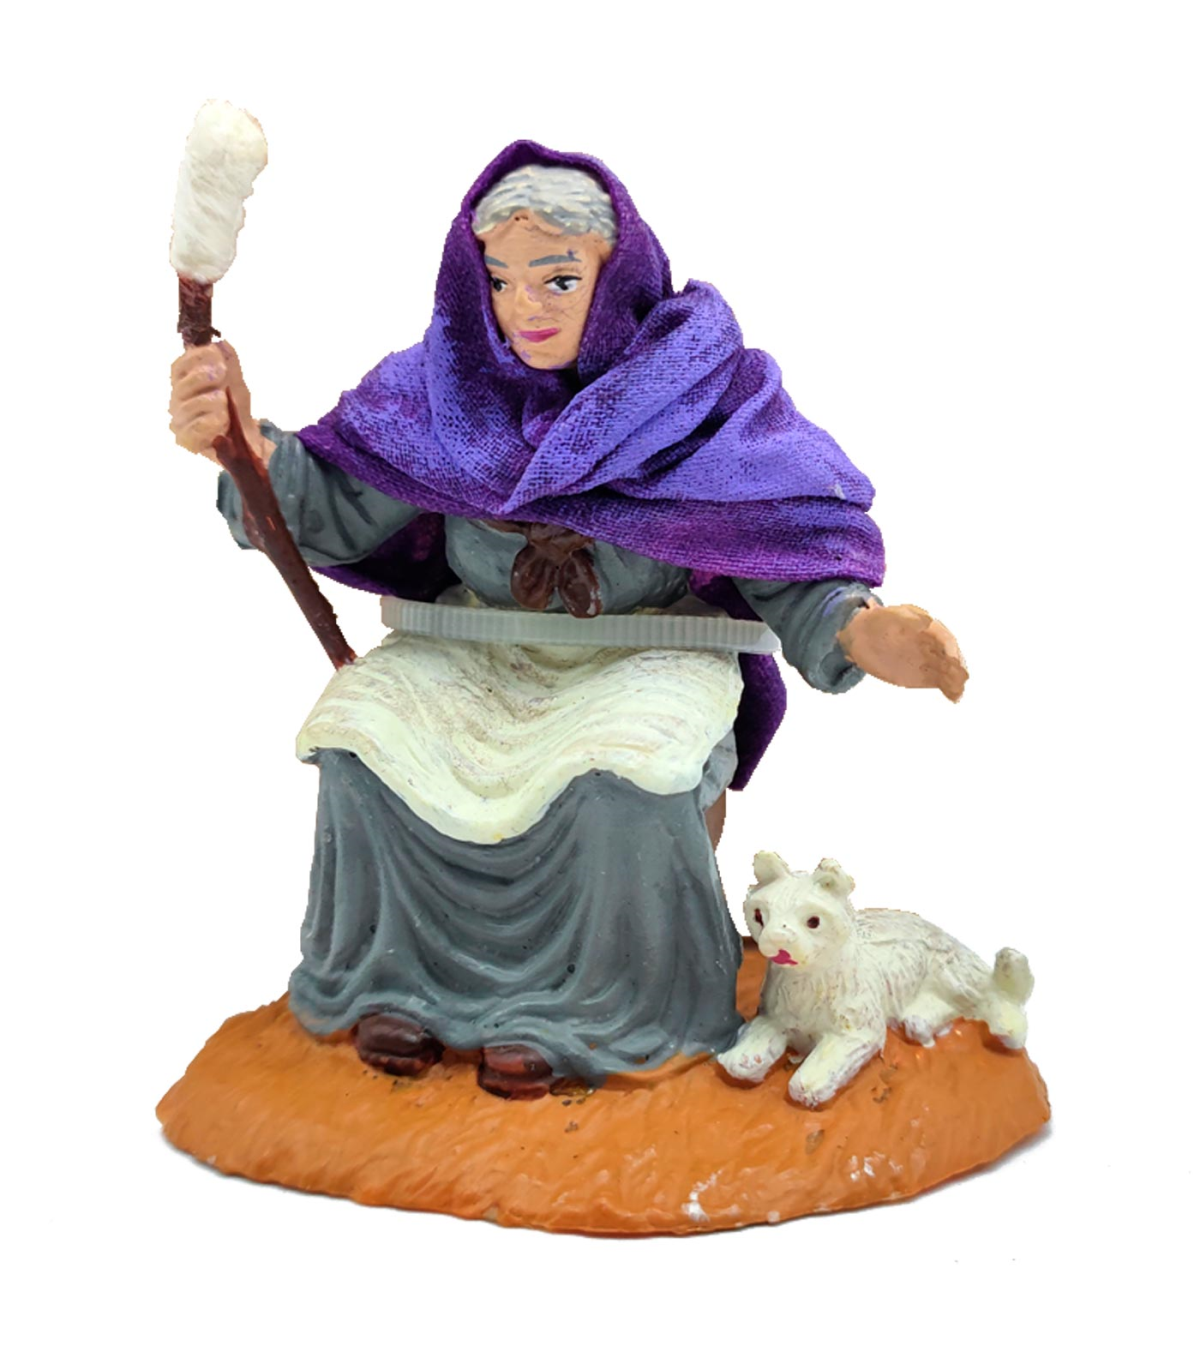 Tradineur - Figura de una hilandera para belén - Fabricado en Durexina -  Figuras decorativas divertidas para nacimiento, navidad